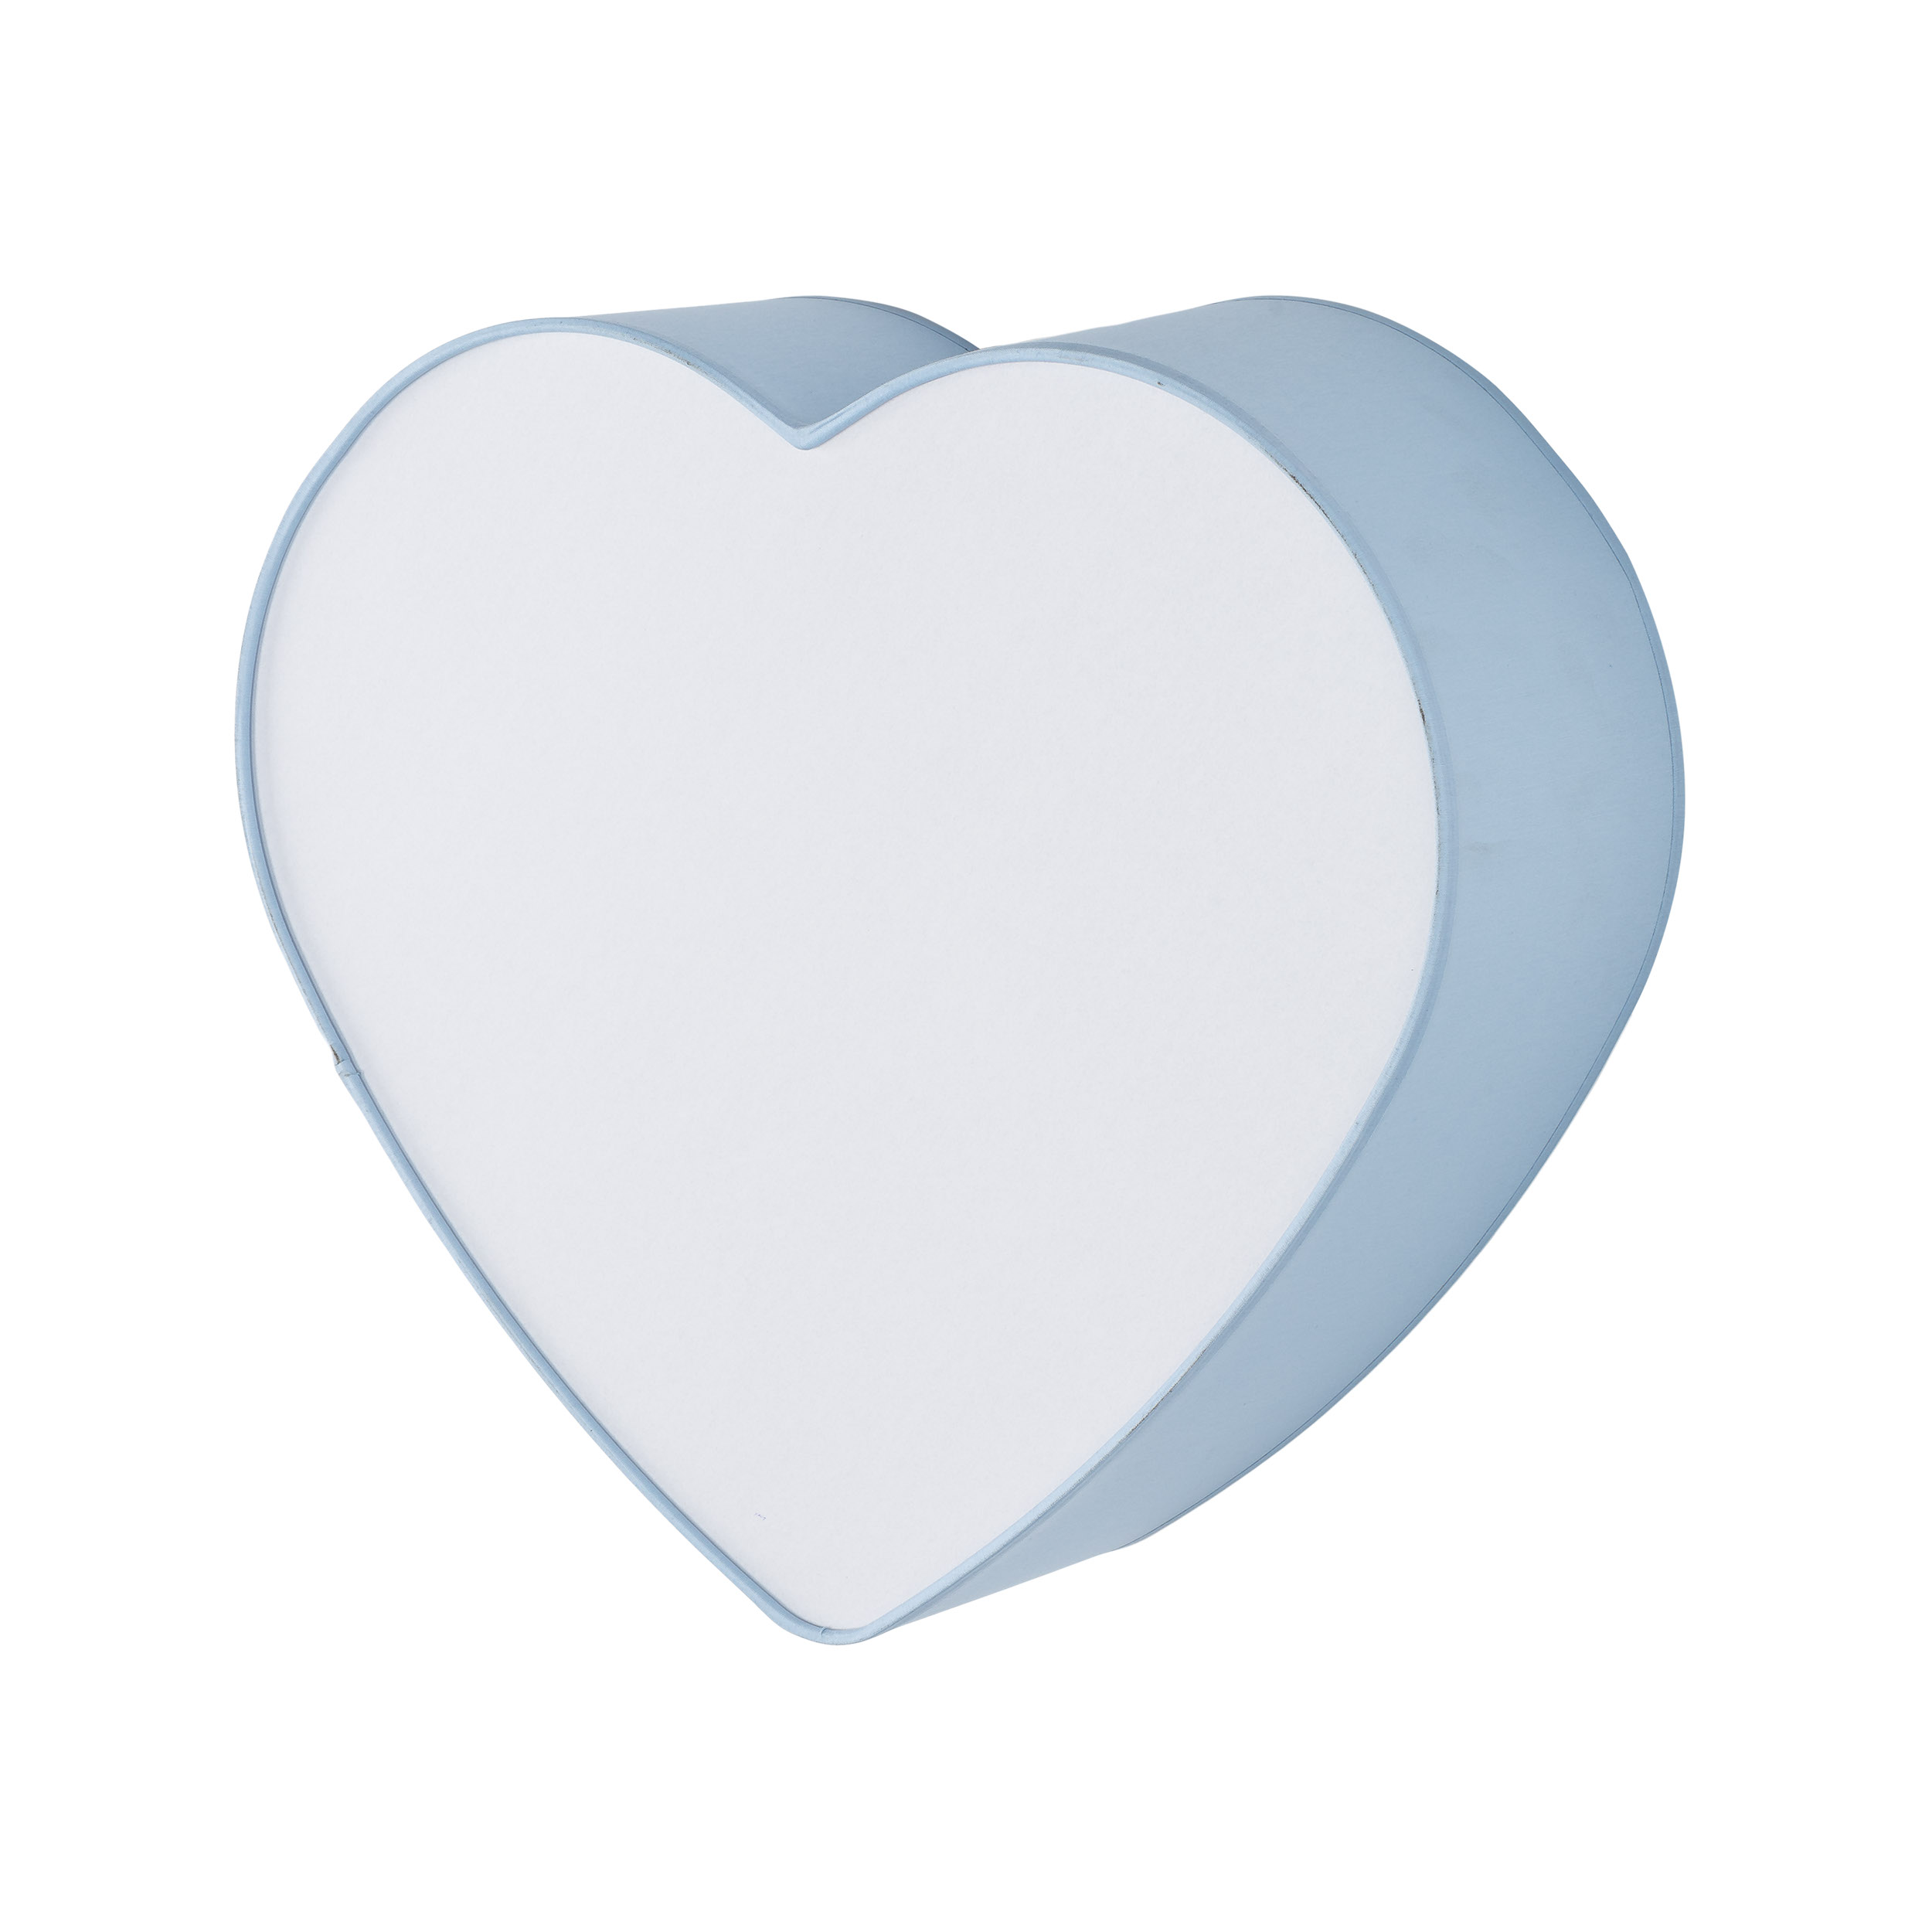 TK Heart børnelampe - blå stof og hvid plastik/metal